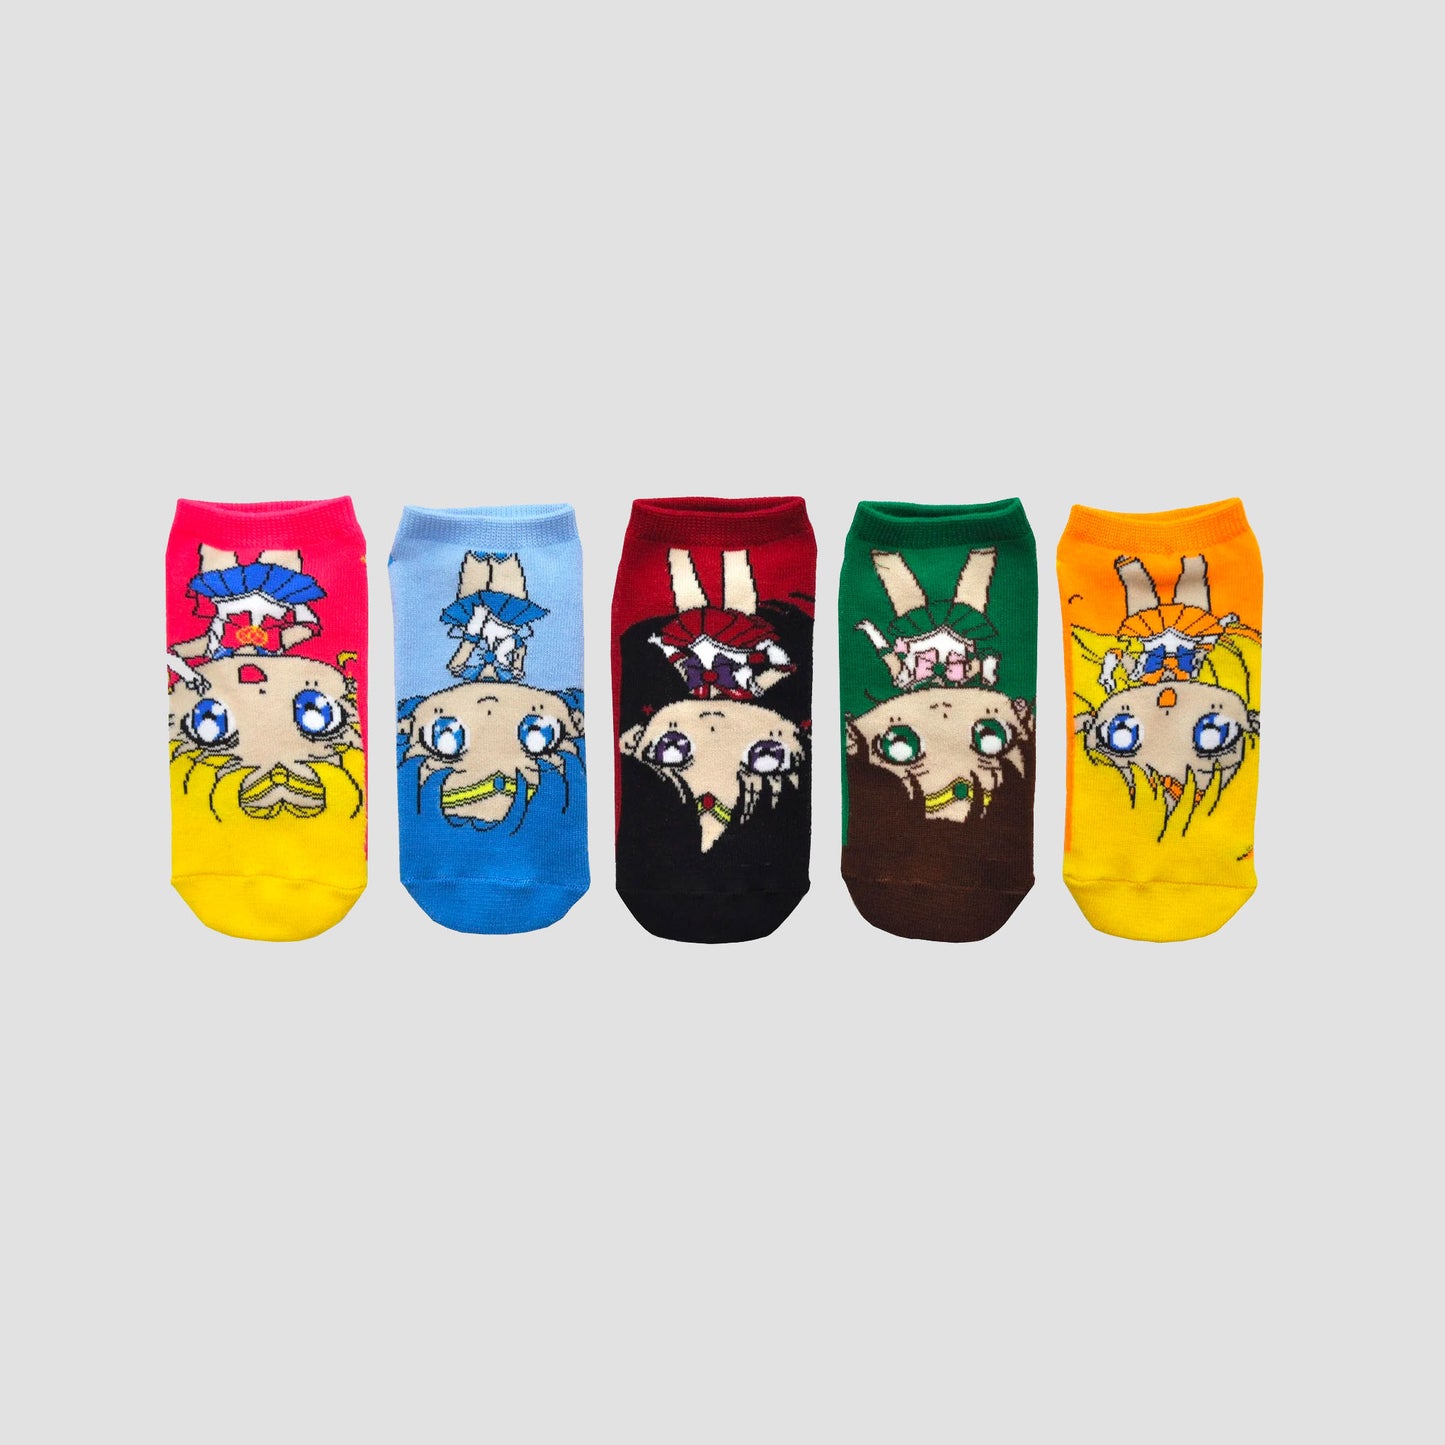 Chibi Sailor Scouts (Sailor Moon) Ladies Ankle Socks 5 Pair Set